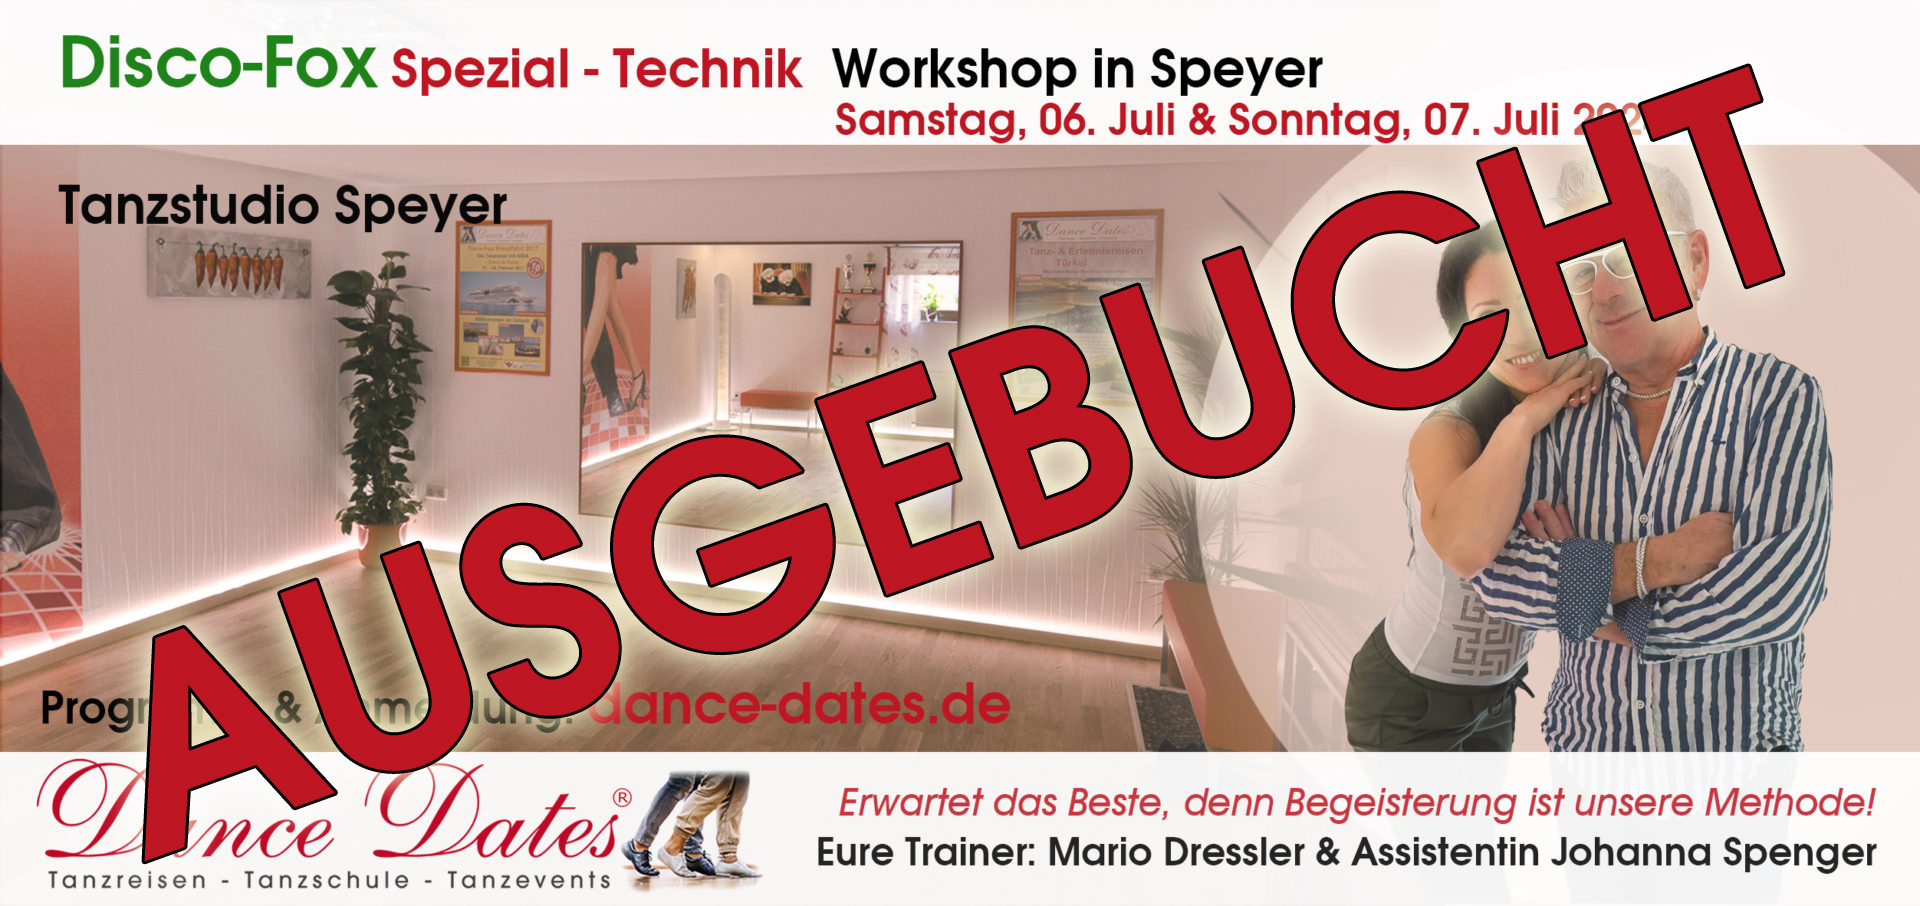 Disco-Fox Spezial-Technik Workshop-Weekend in Speyer